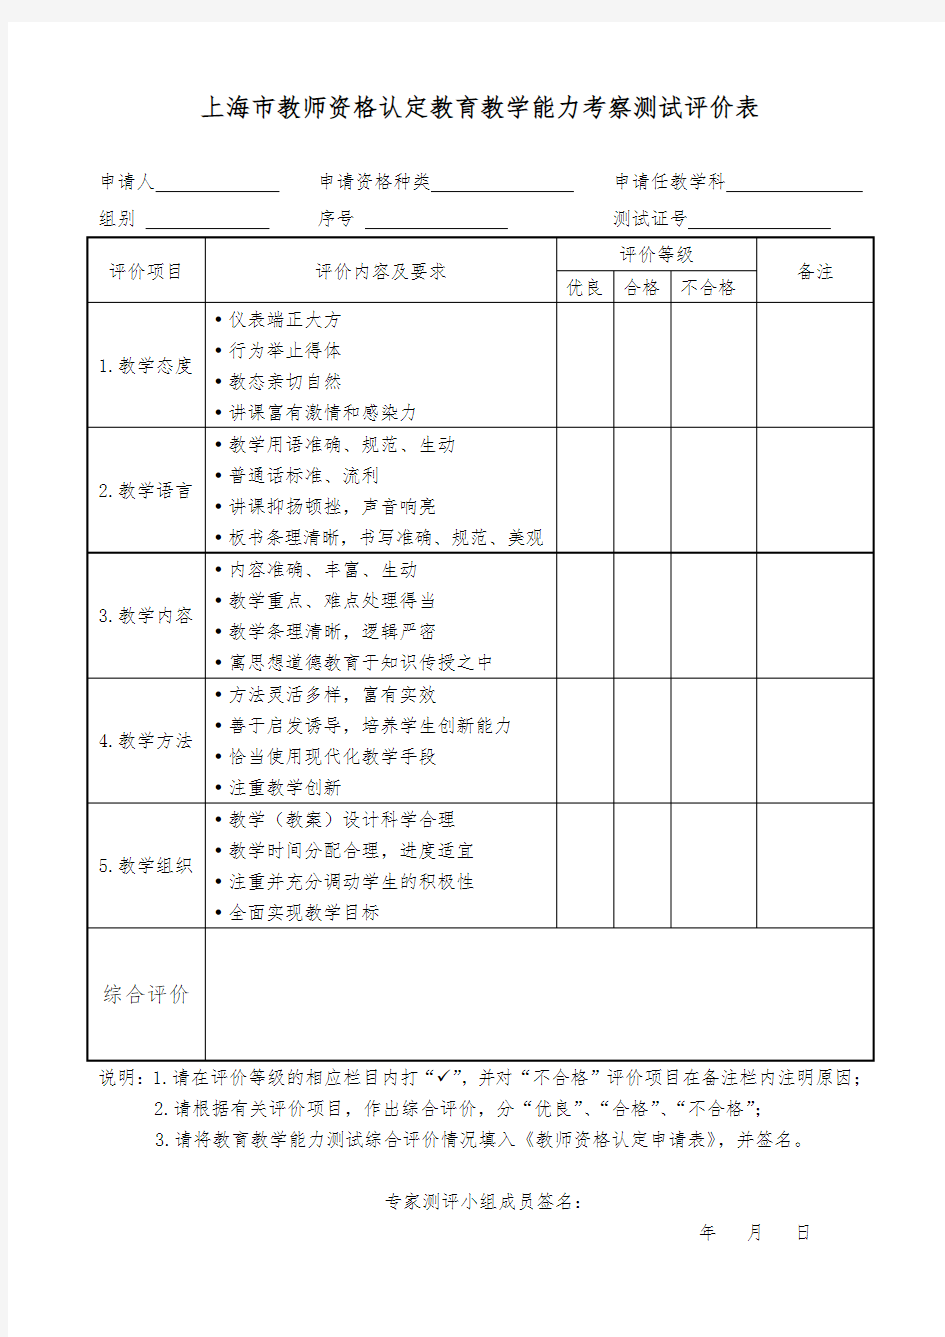 上海市教师资格认定教育教学能力考察测试评价表